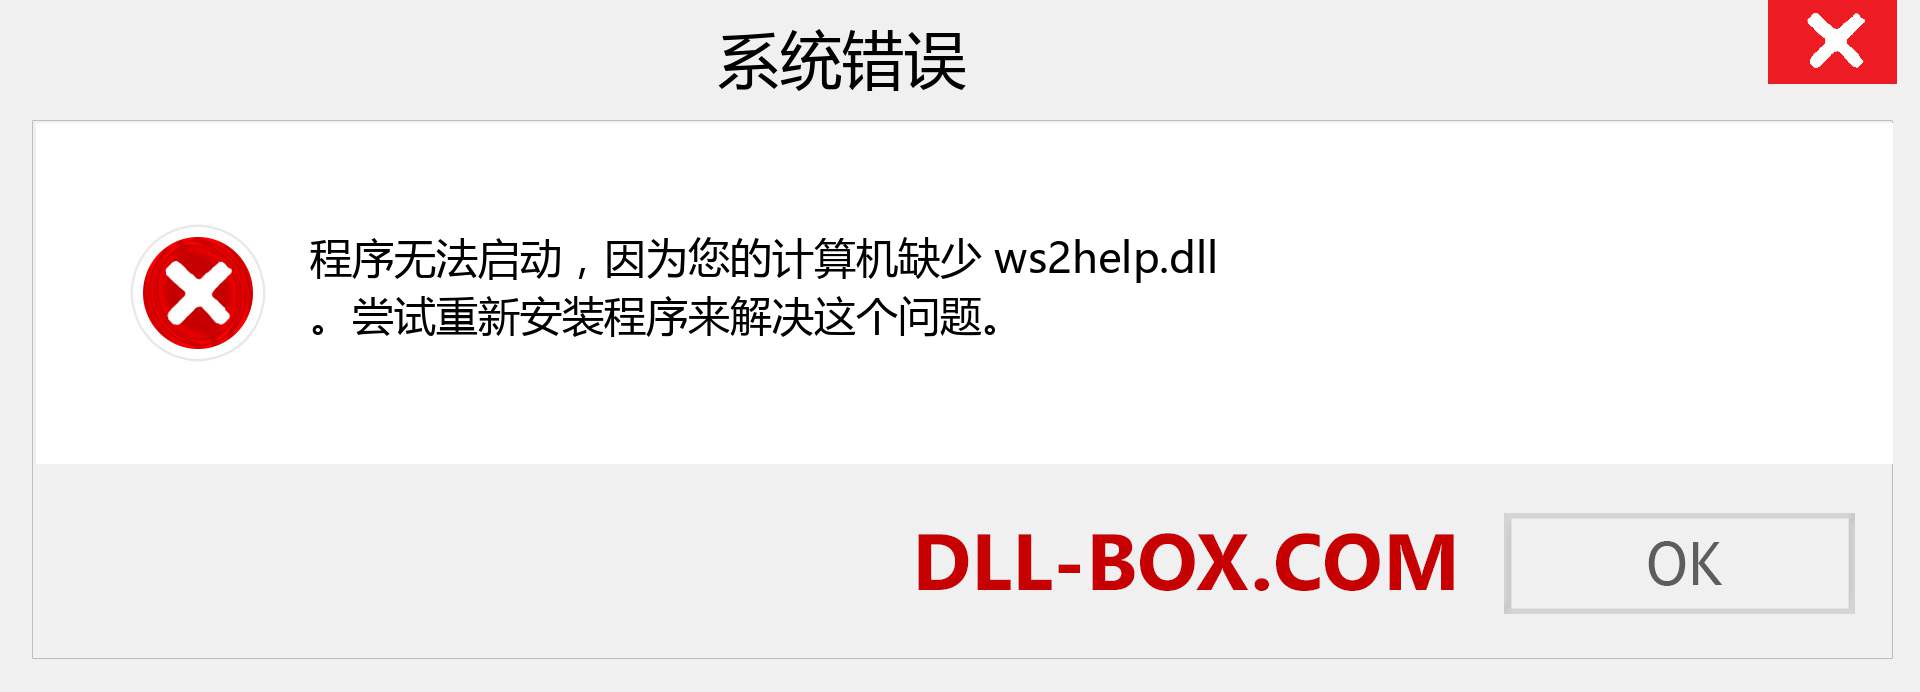 ws2help.dll 文件丢失？。 适用于 Windows 7、8、10 的下载 - 修复 Windows、照片、图像上的 ws2help dll 丢失错误